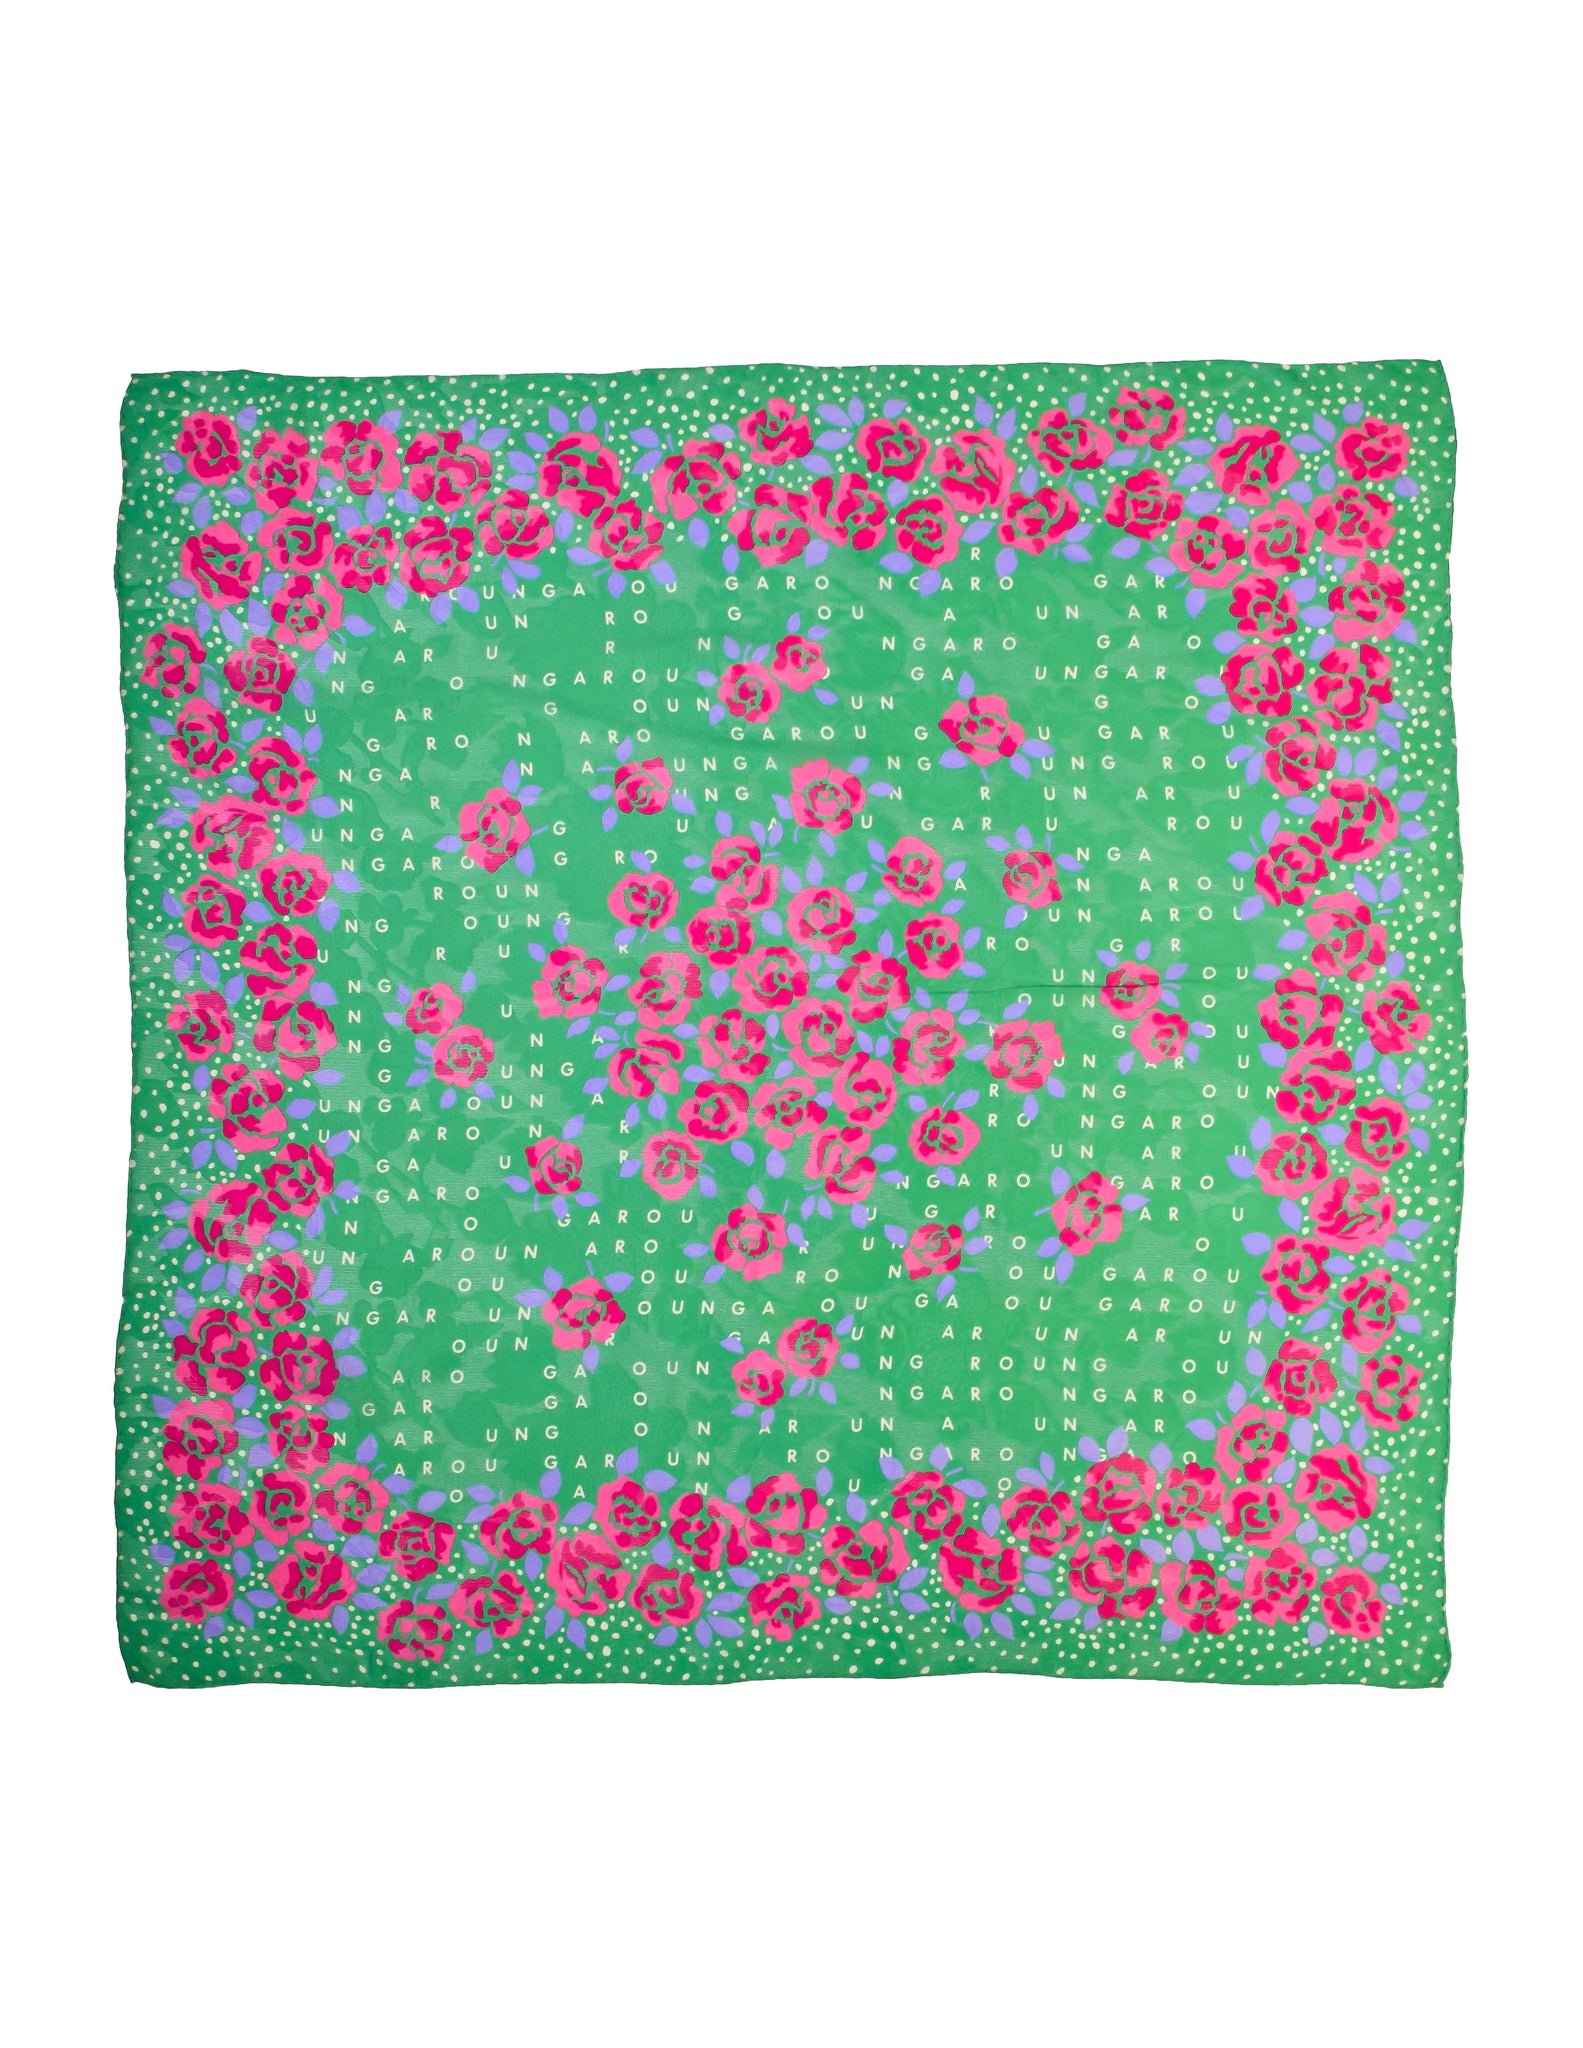 Ungaro Vintage 1980s Green Pink Namesake Rose Floral Jacquard Silk Scarf